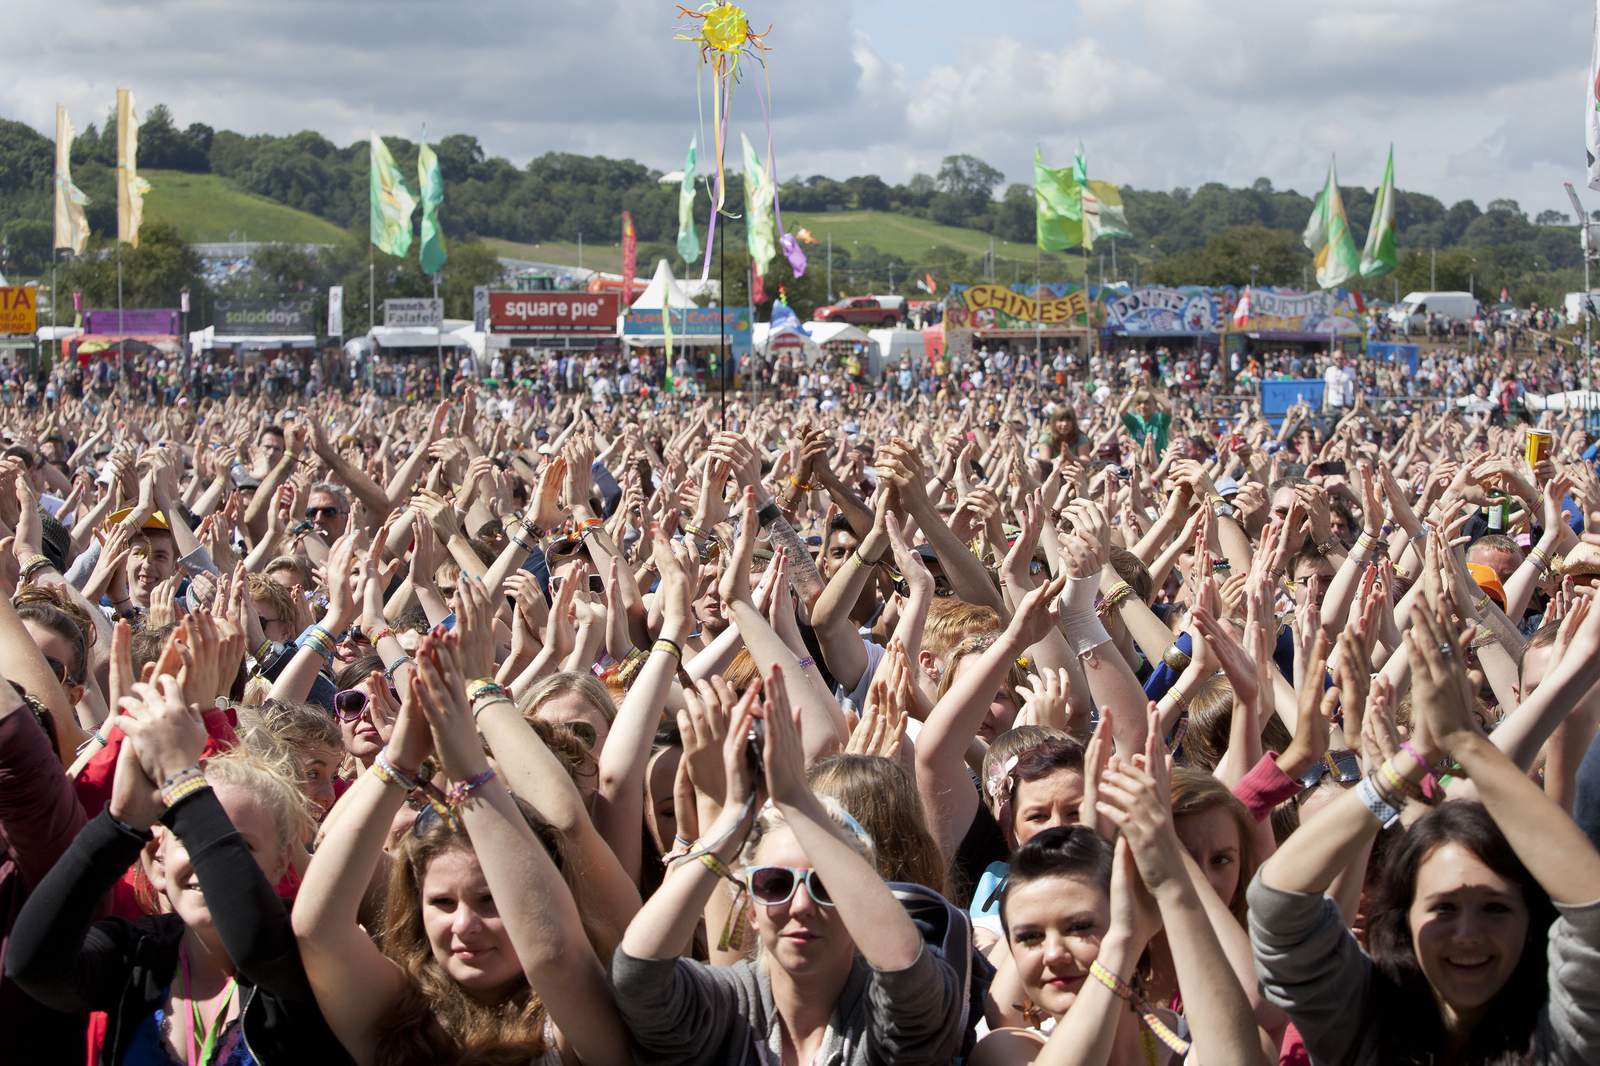 Virus scuttles Glastonbury Festival for second straight year